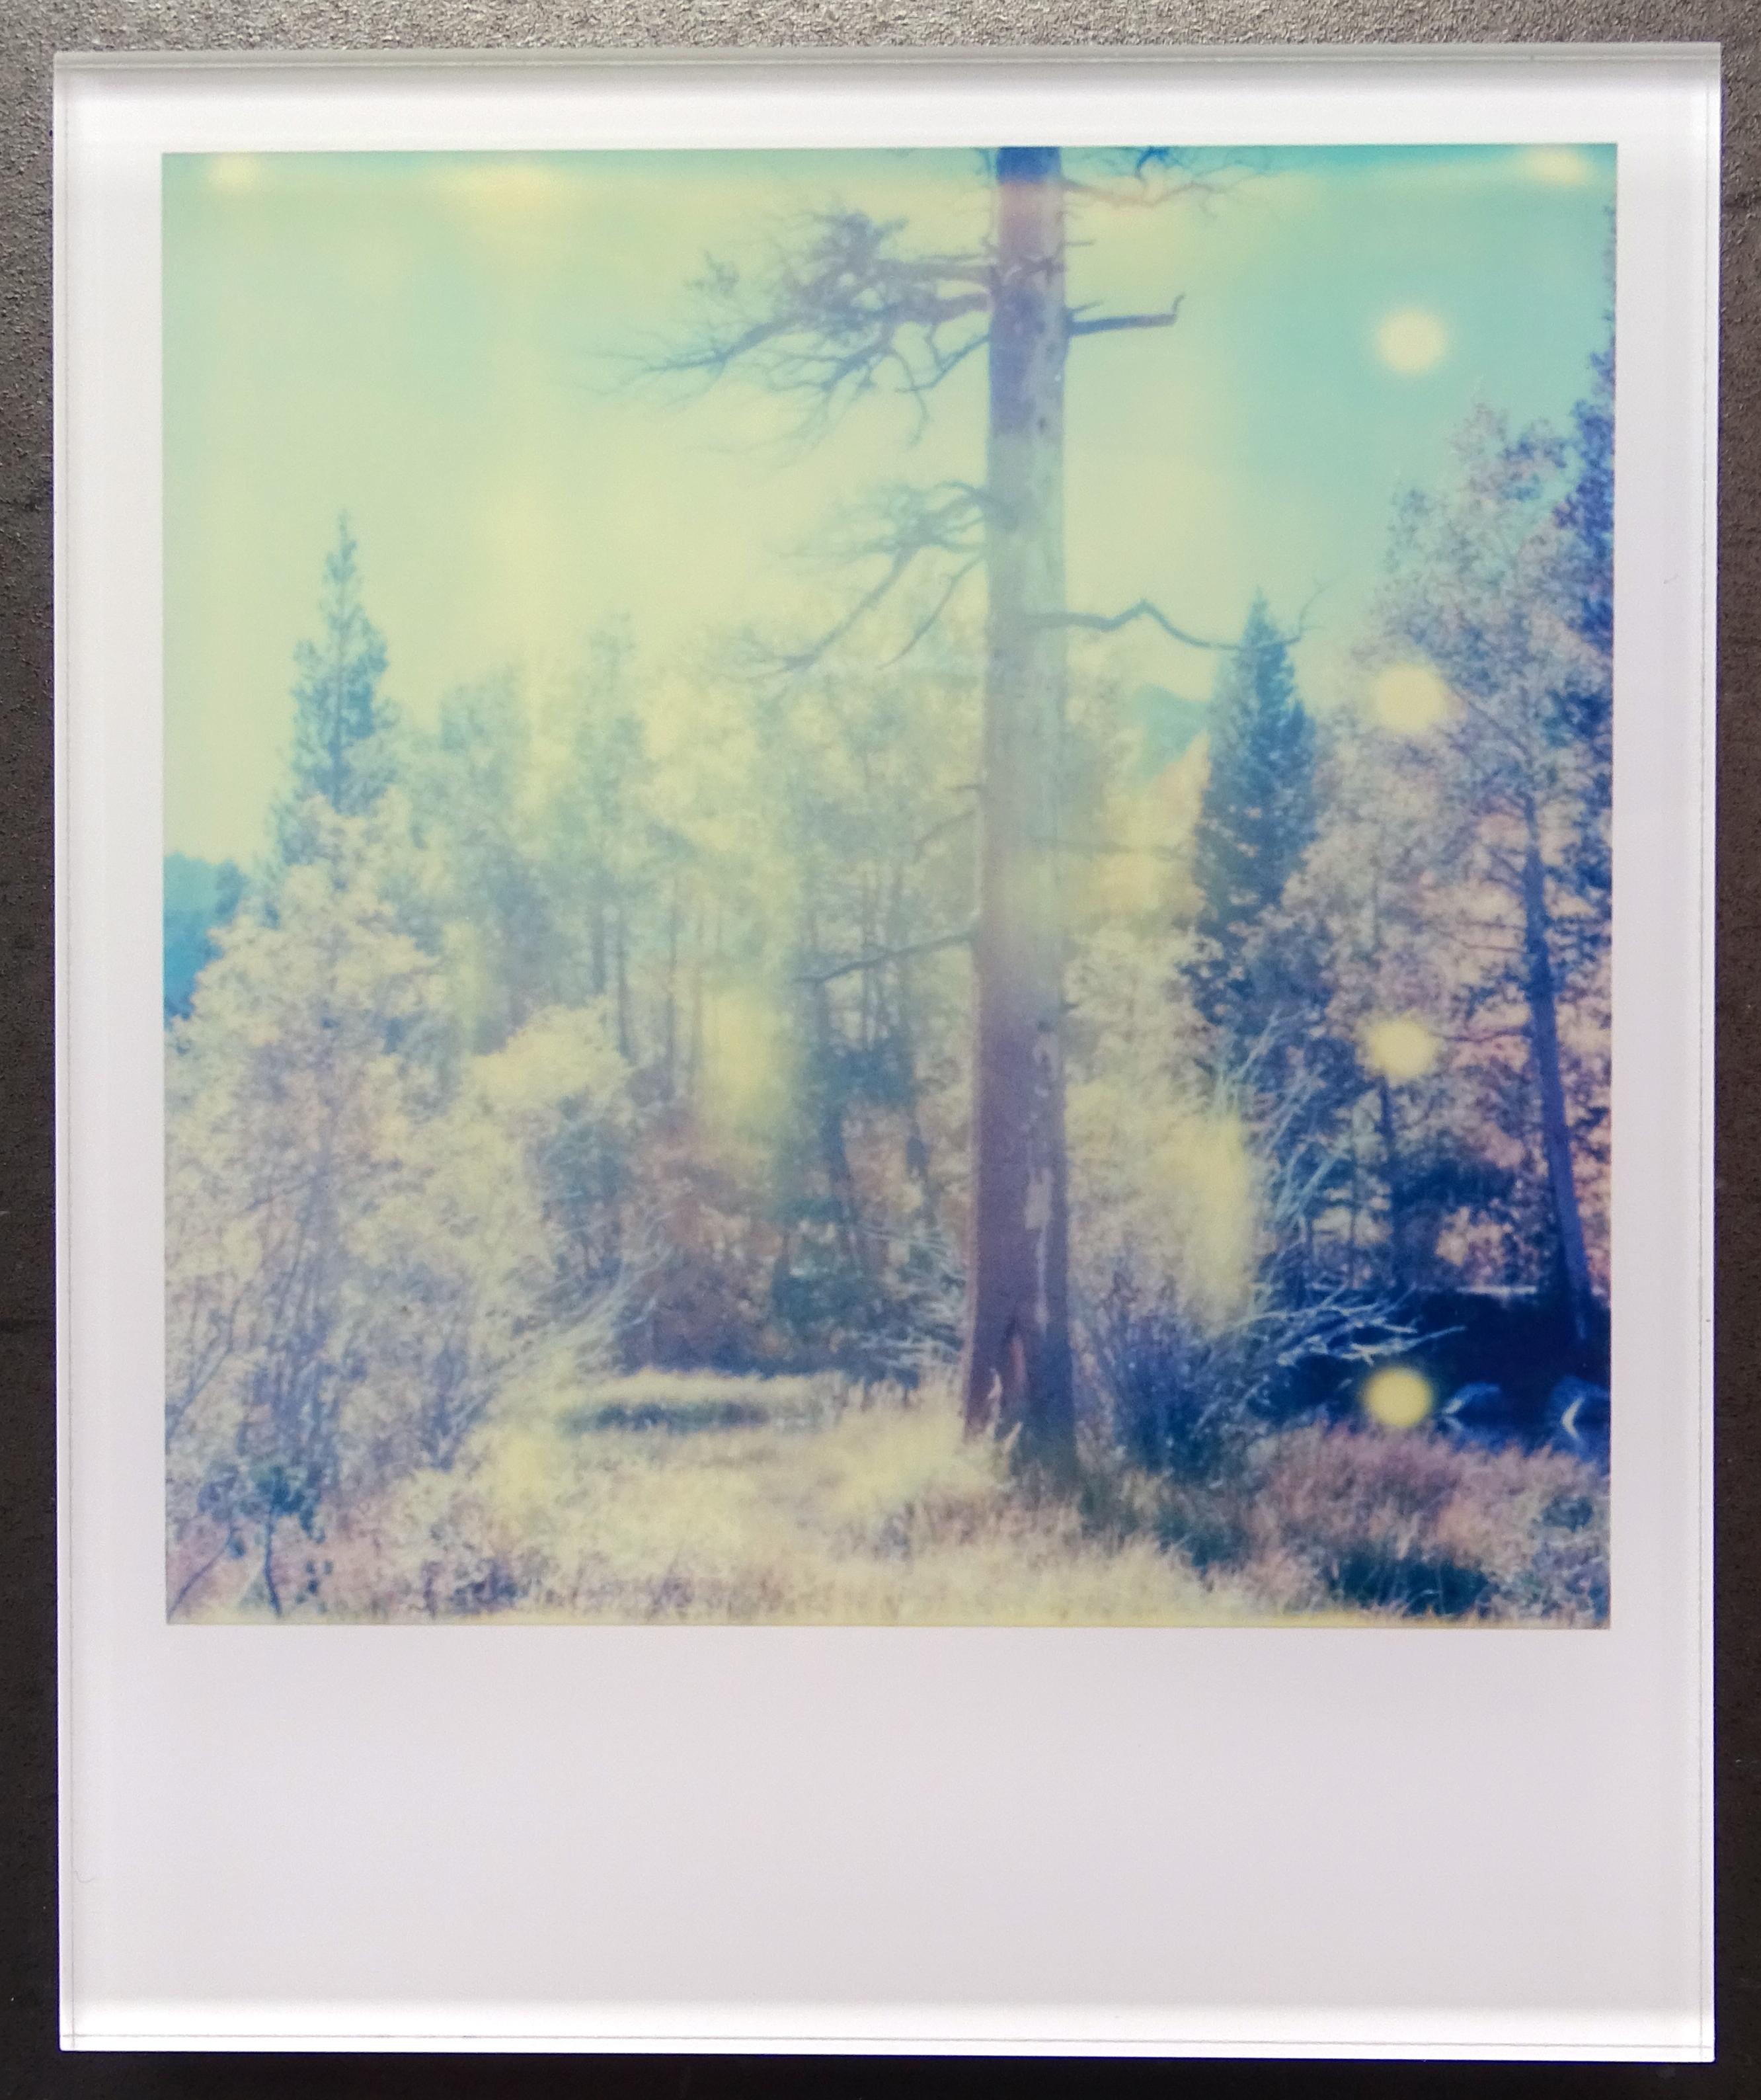 Stefanie Schneider Minis - In the Range of Light - based on a Polaroid